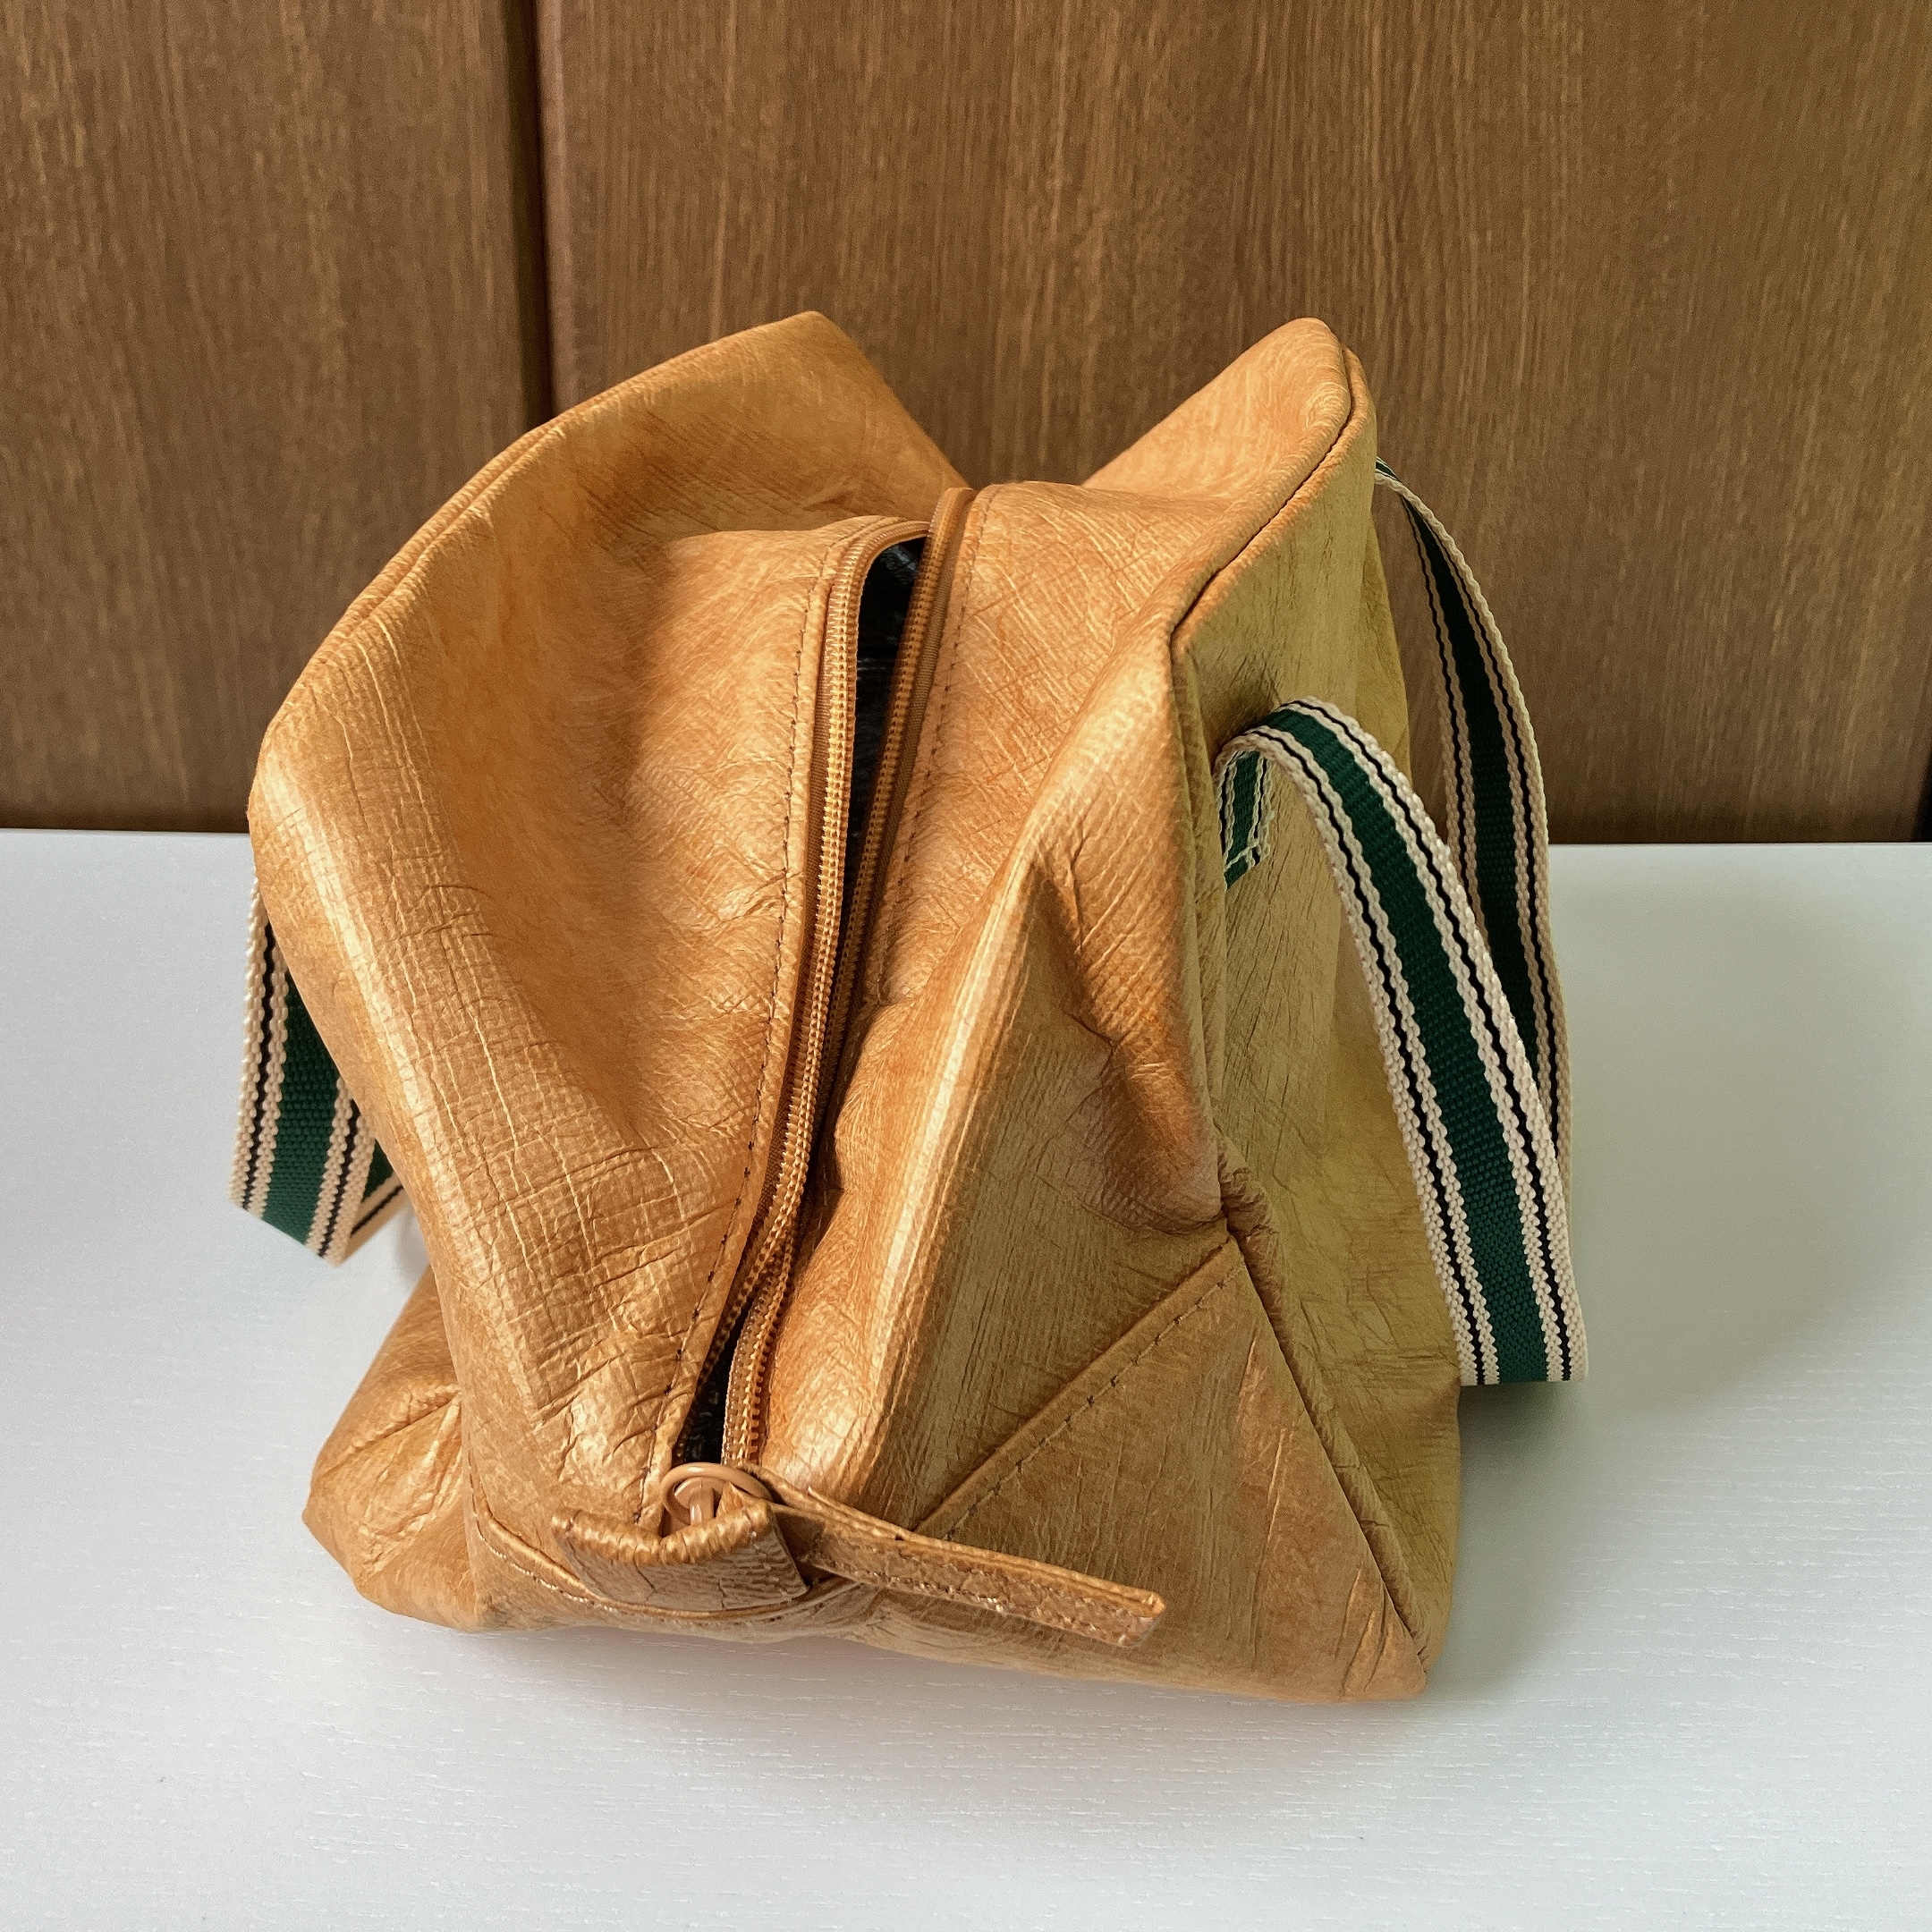 ZARA HOME（ザラホーム）のおすすめランチバッグ「ペーパー サーマル フードバッグ」